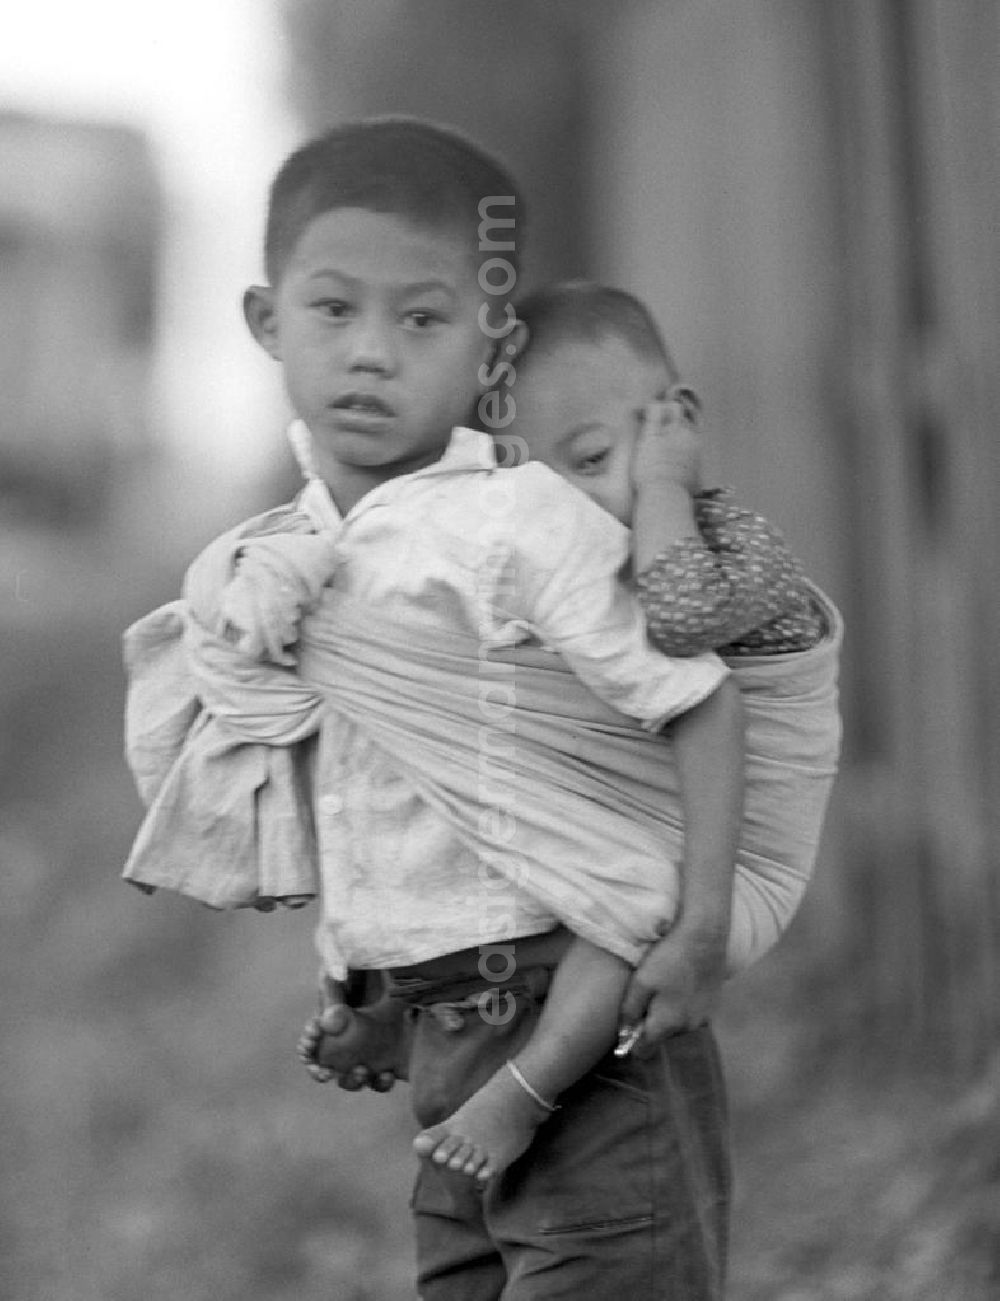 GDR picture archive: Vientiane - Ein Junge trägt sein kleines Geschwisterkind in einem Tragetuch auf seinem Rücken auf einer Straße in Vientiane, der Hauptstadt der Demokratischen Volksrepublik Laos.